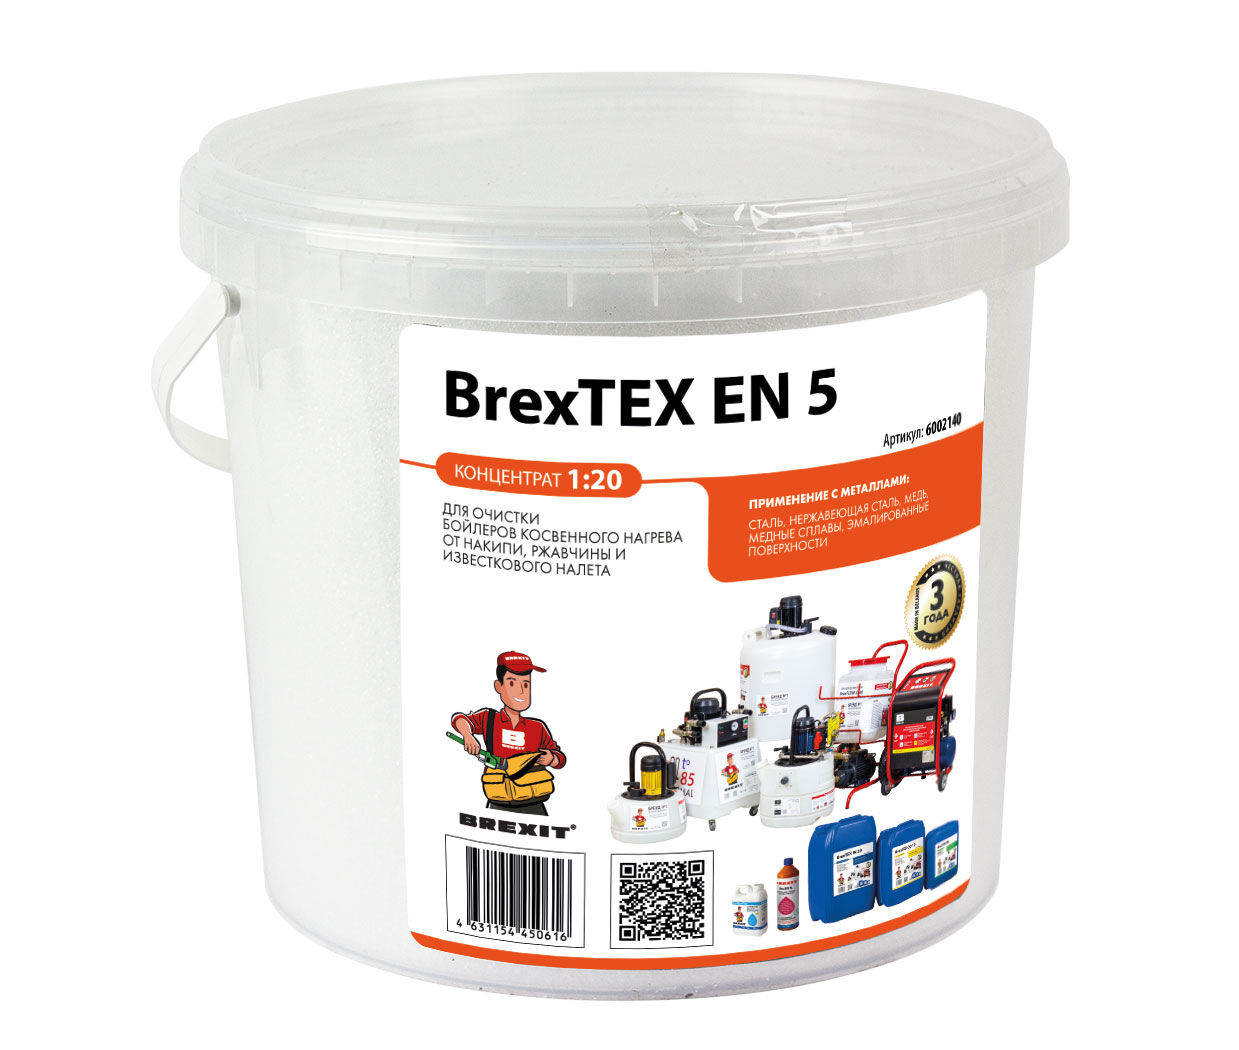 Порошкообразный реагент для очистки водонагревателей BrexTEX EN 5 brexit